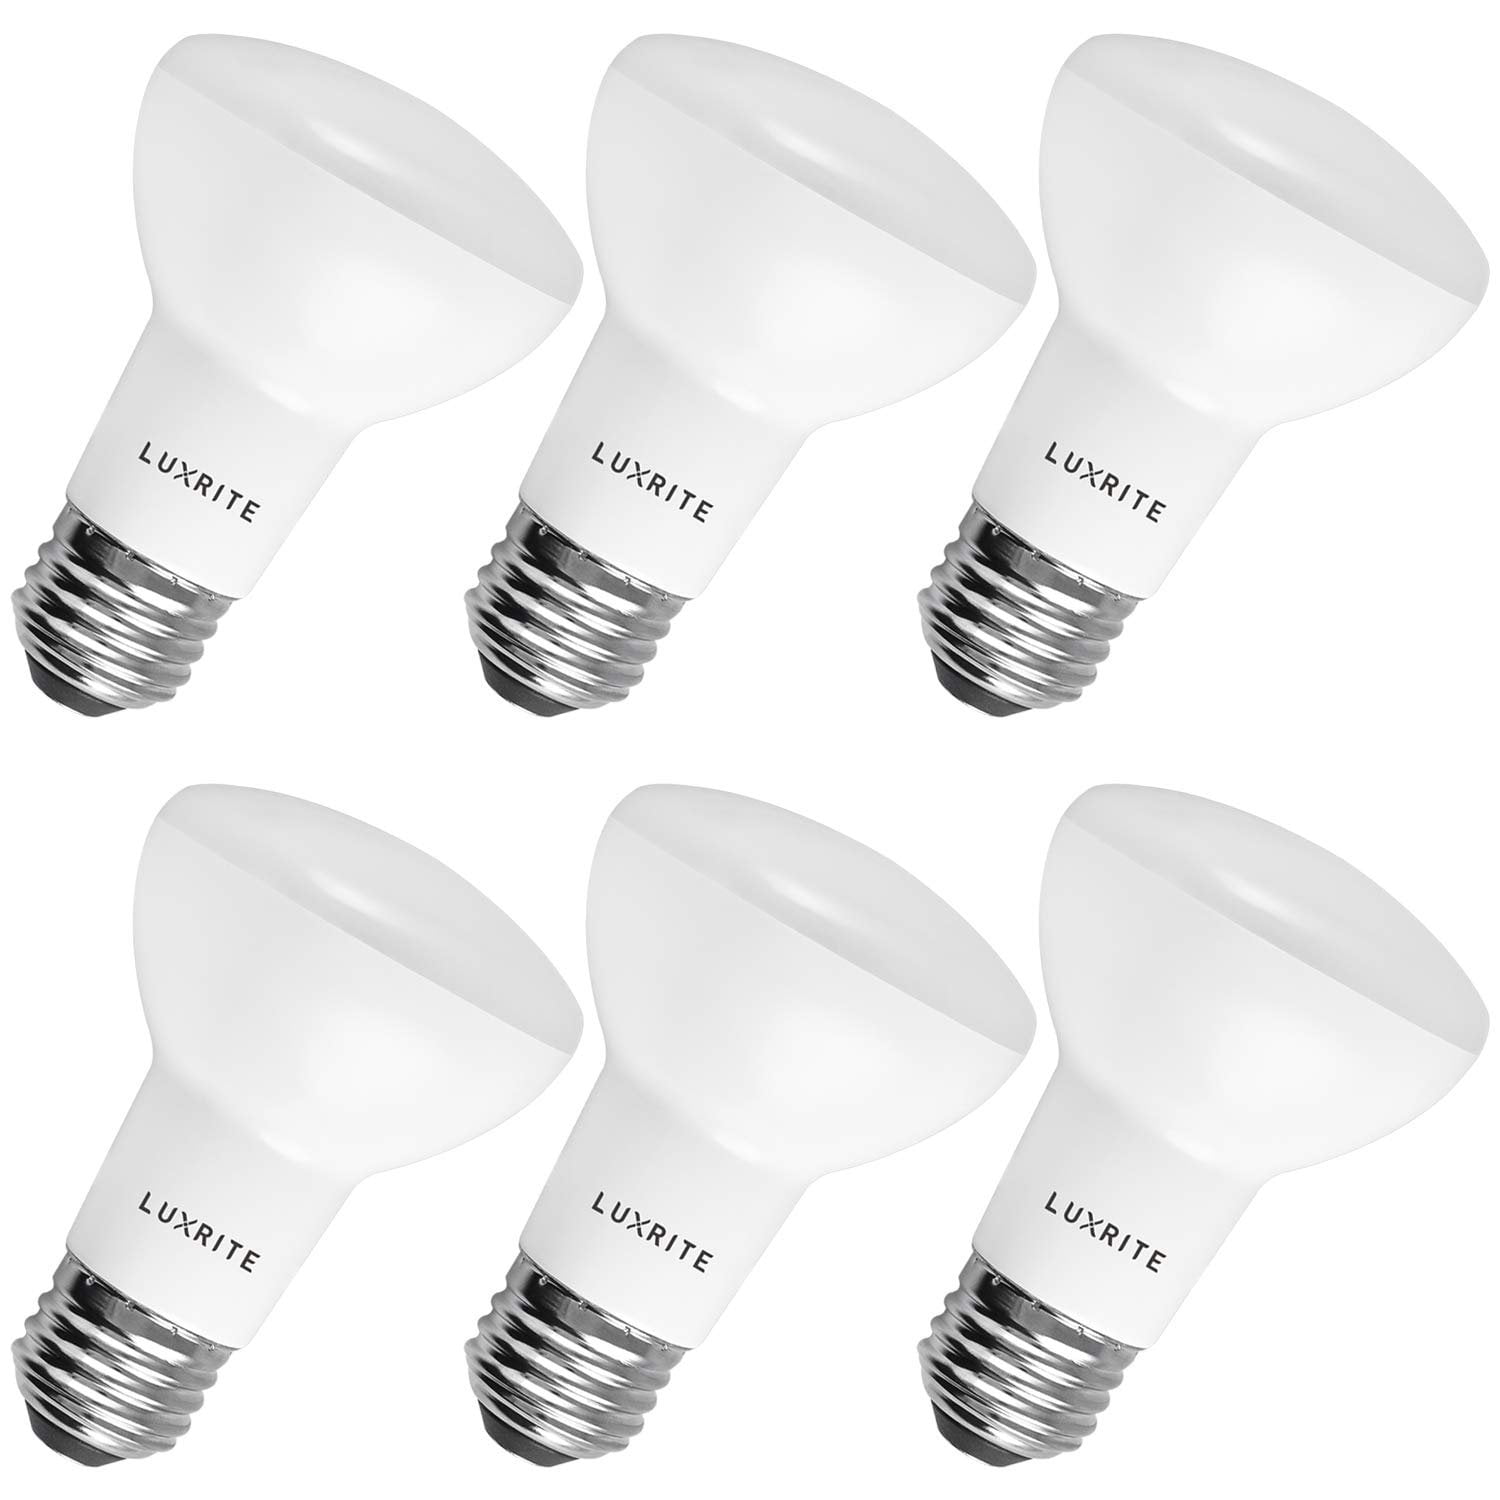 Luxrite BR20 LED Flood Light Bulb, 6.5 Watt, Natural White, 460 Lumens, Dimmable, E26 Base 6-Pack - Walmart.com